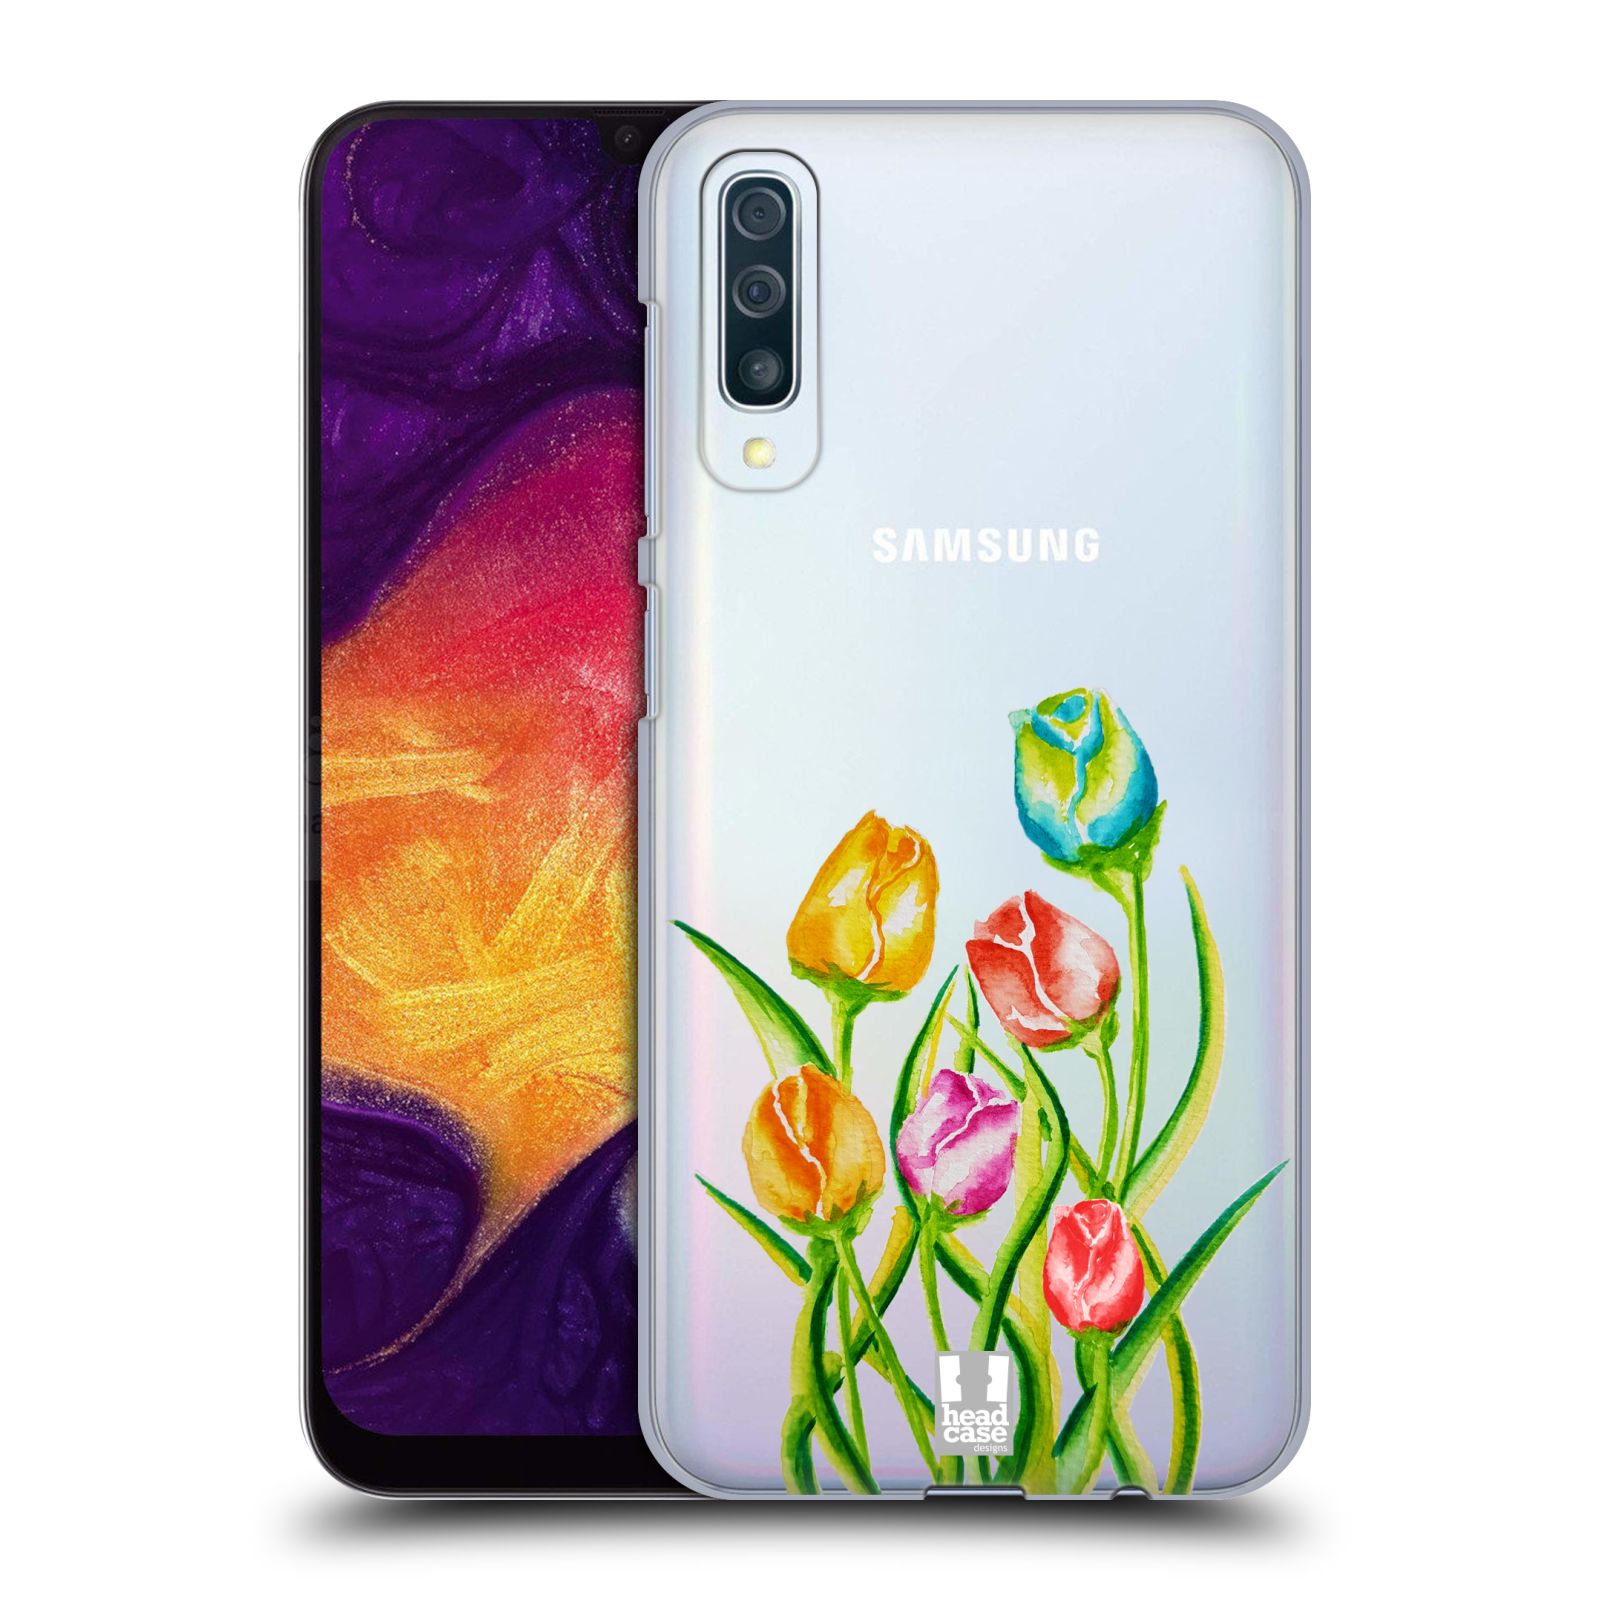 Pouzdro na mobil Samsung Galaxy A50 - HEAD CASE - Květina Tulipán vodní barvy